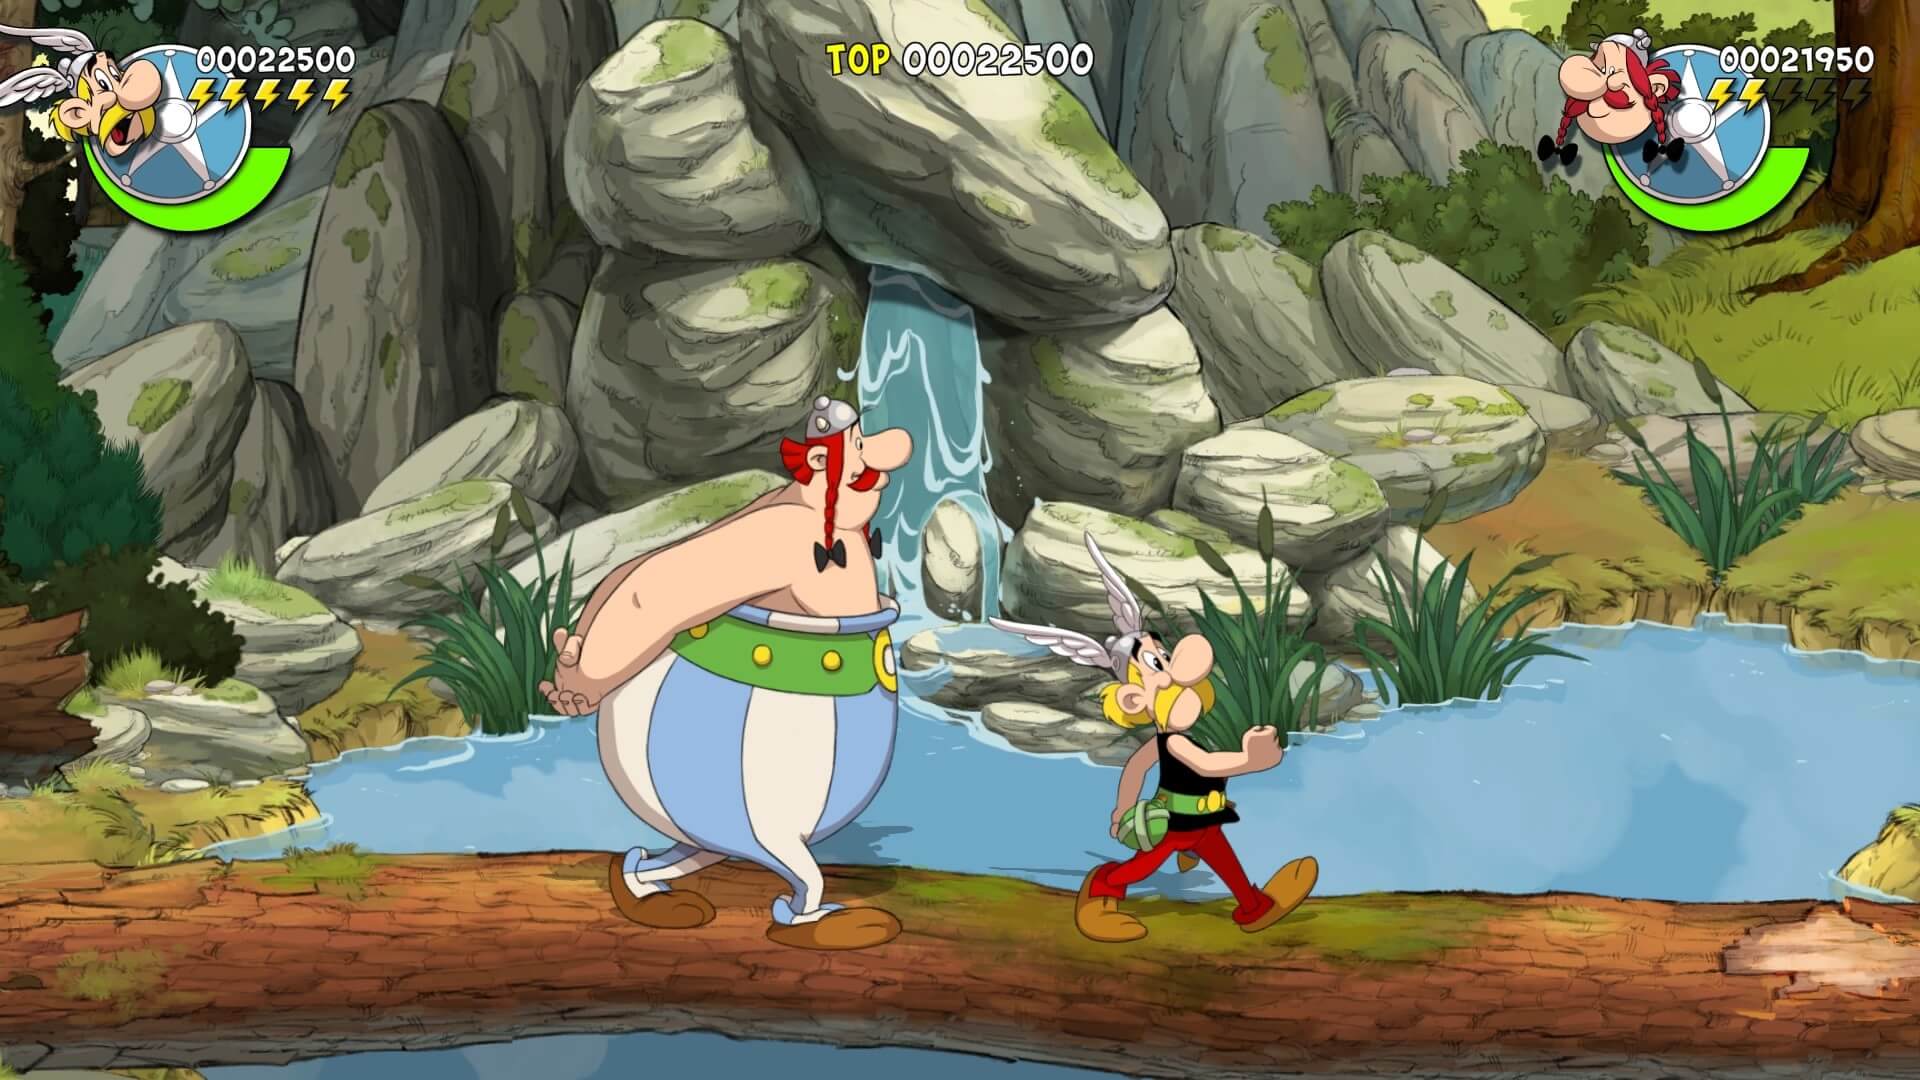 asterix & obelix slap them all! 20211205202354